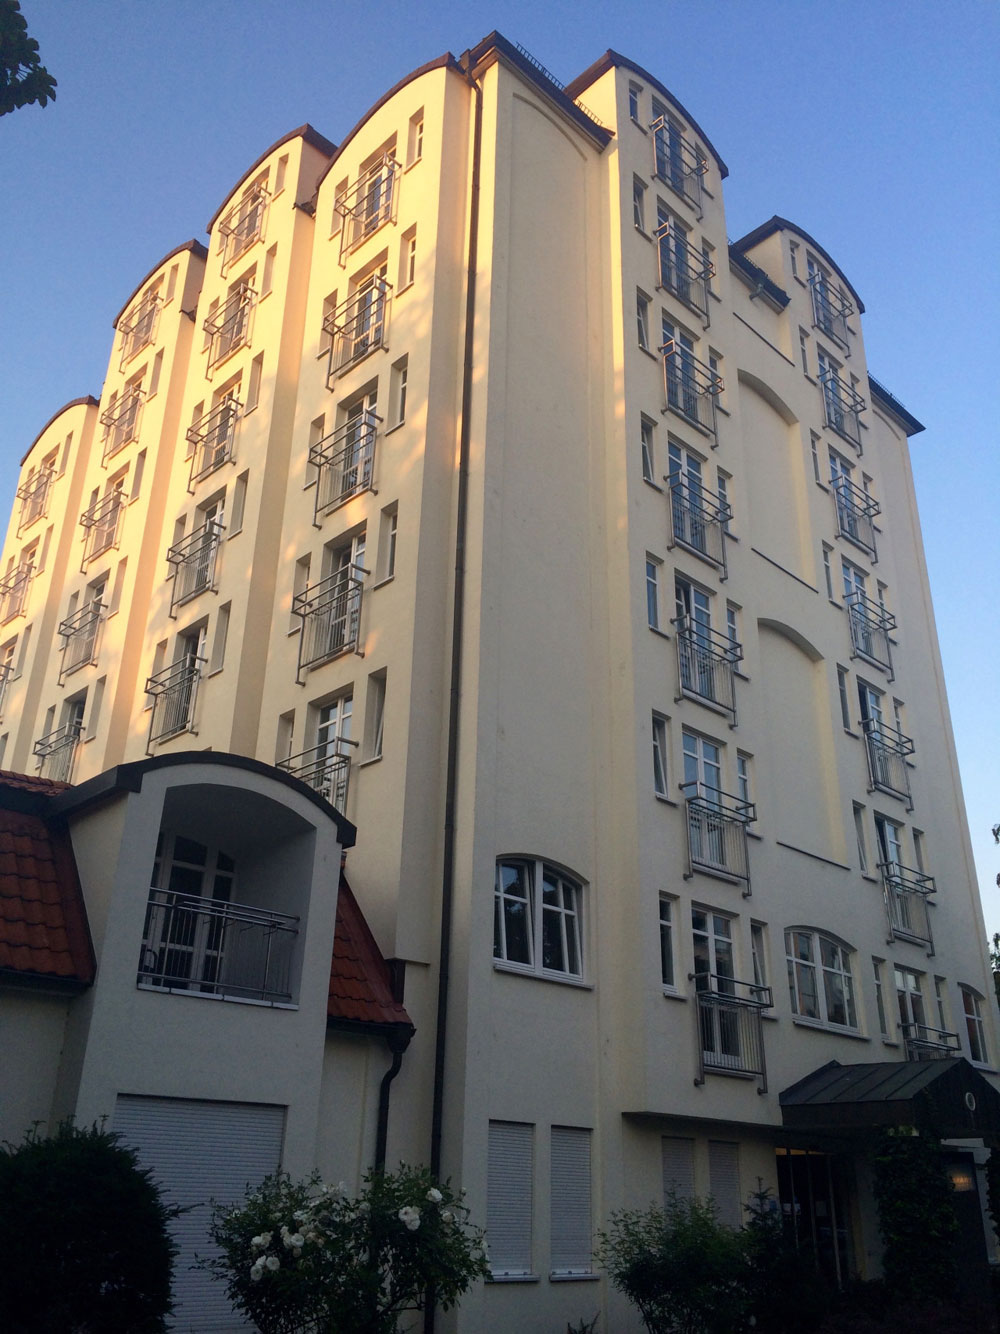 Building in Hohenfelde